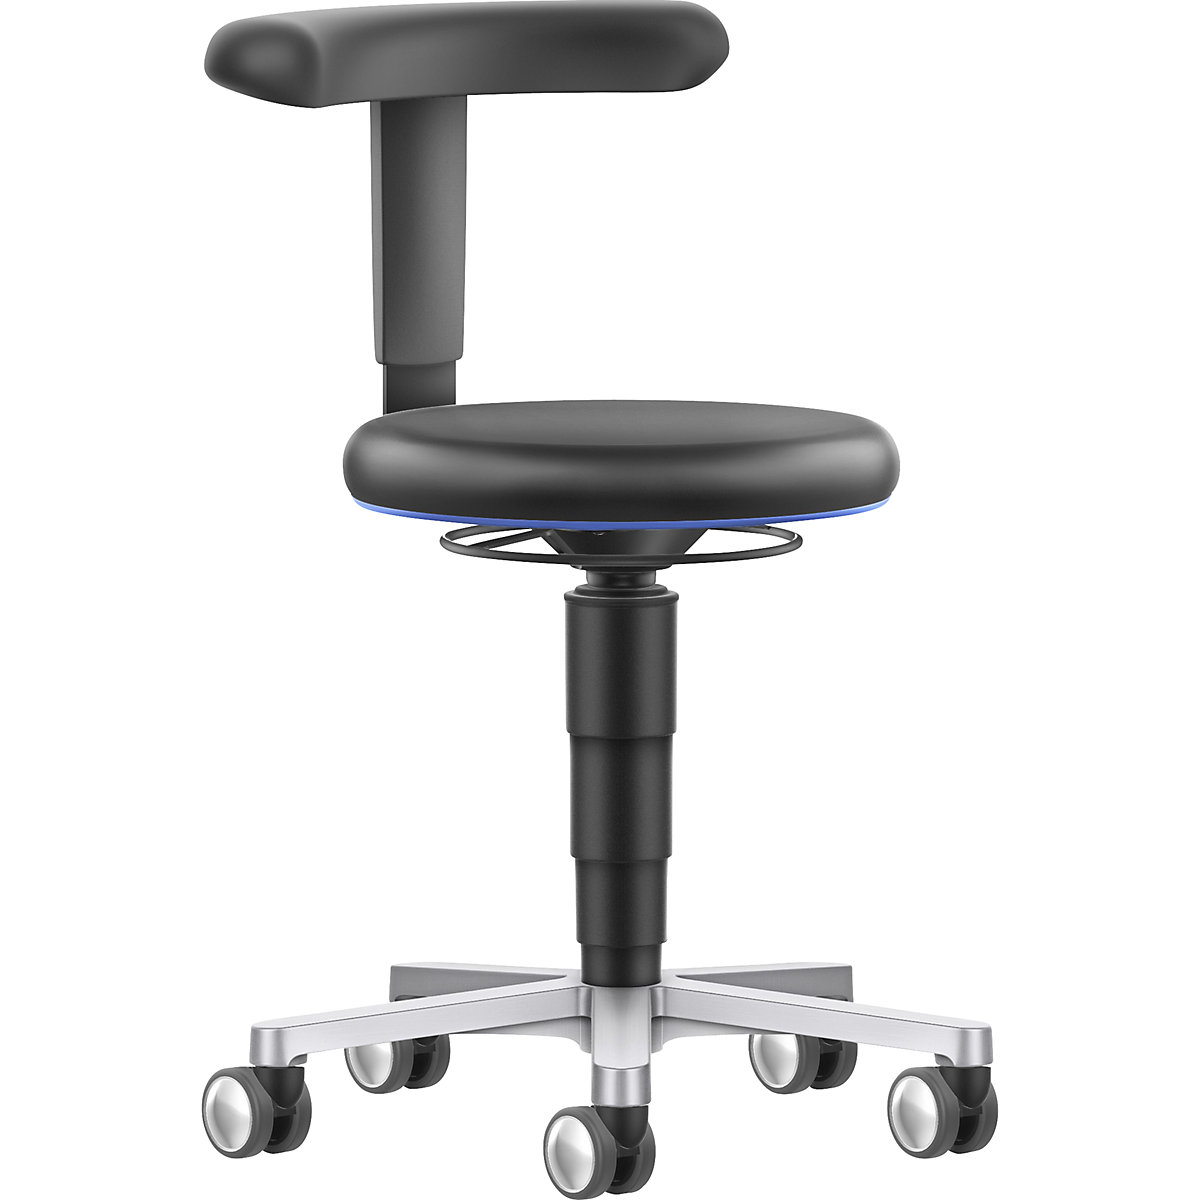 Laboratorní pohyblivá židle s flexibilní podpěrou - bimos